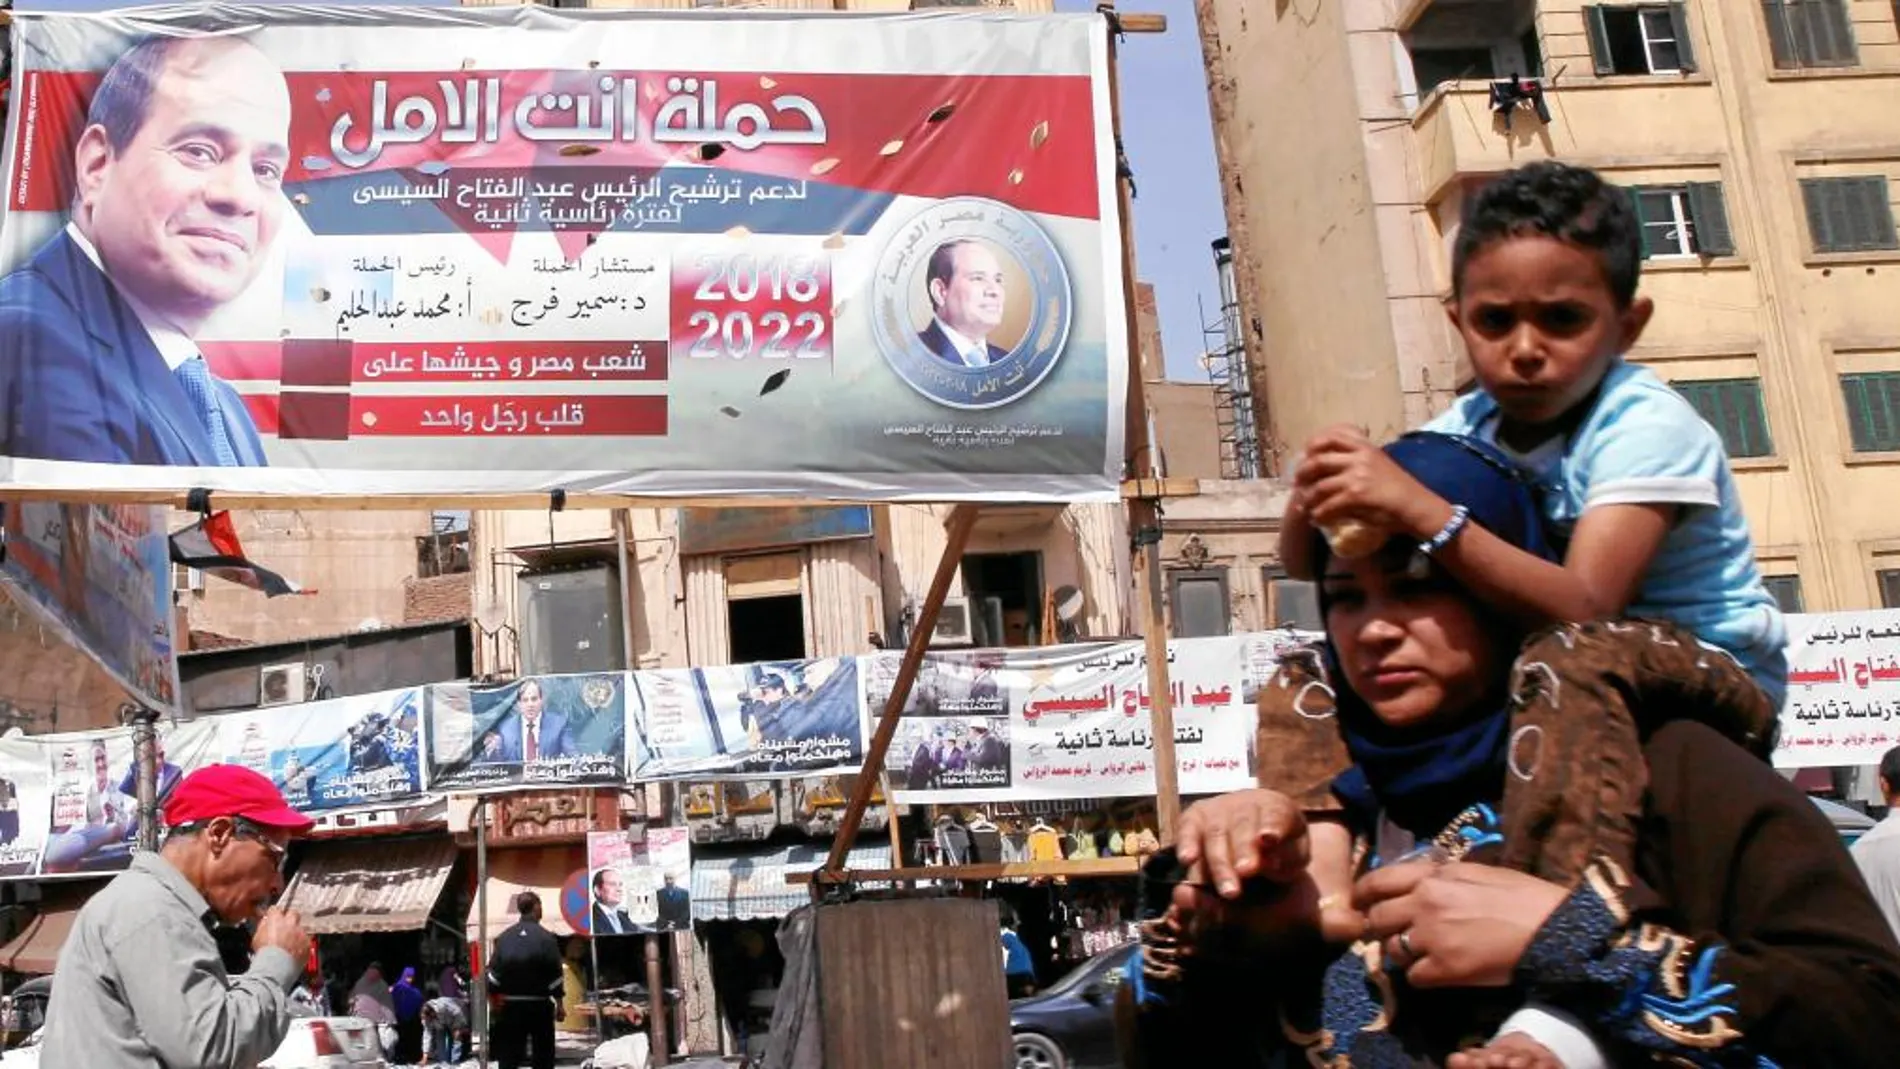 Varias personas caminan por una calle de El Cairo junto a un cartel con la imagen del presidente egipcio Al Sisi